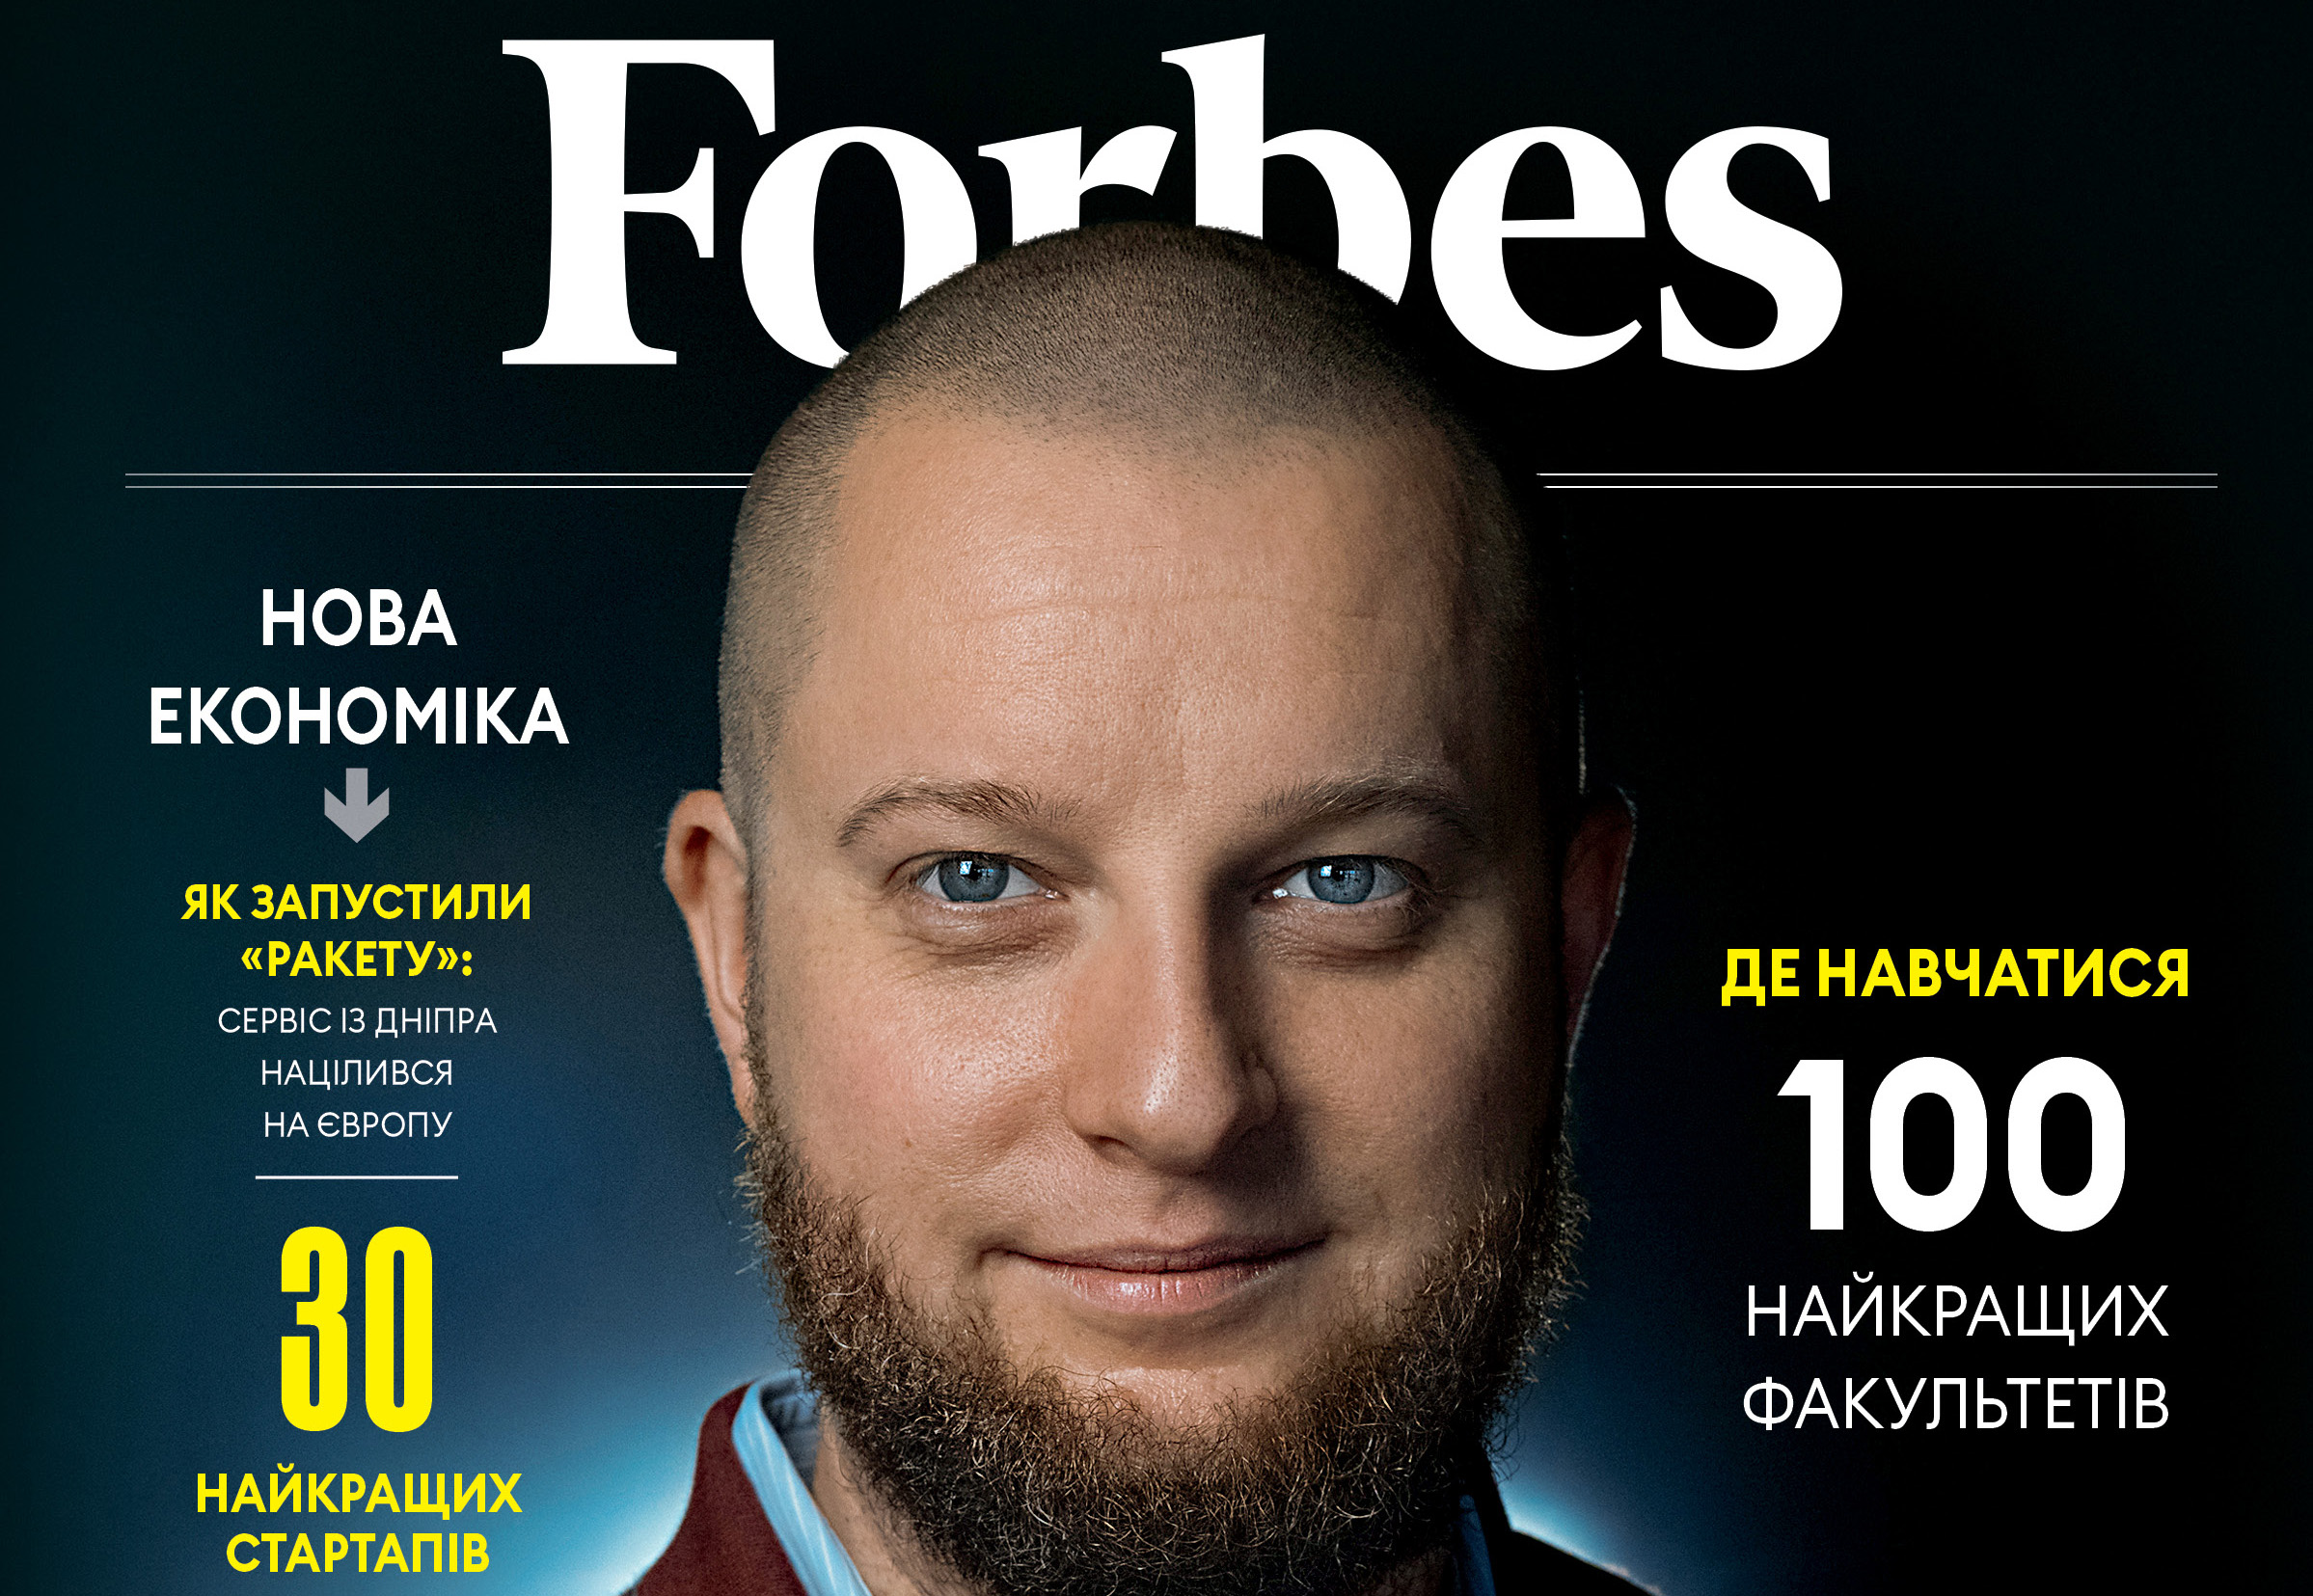 Фрагмент обкладинки журналу Forbes